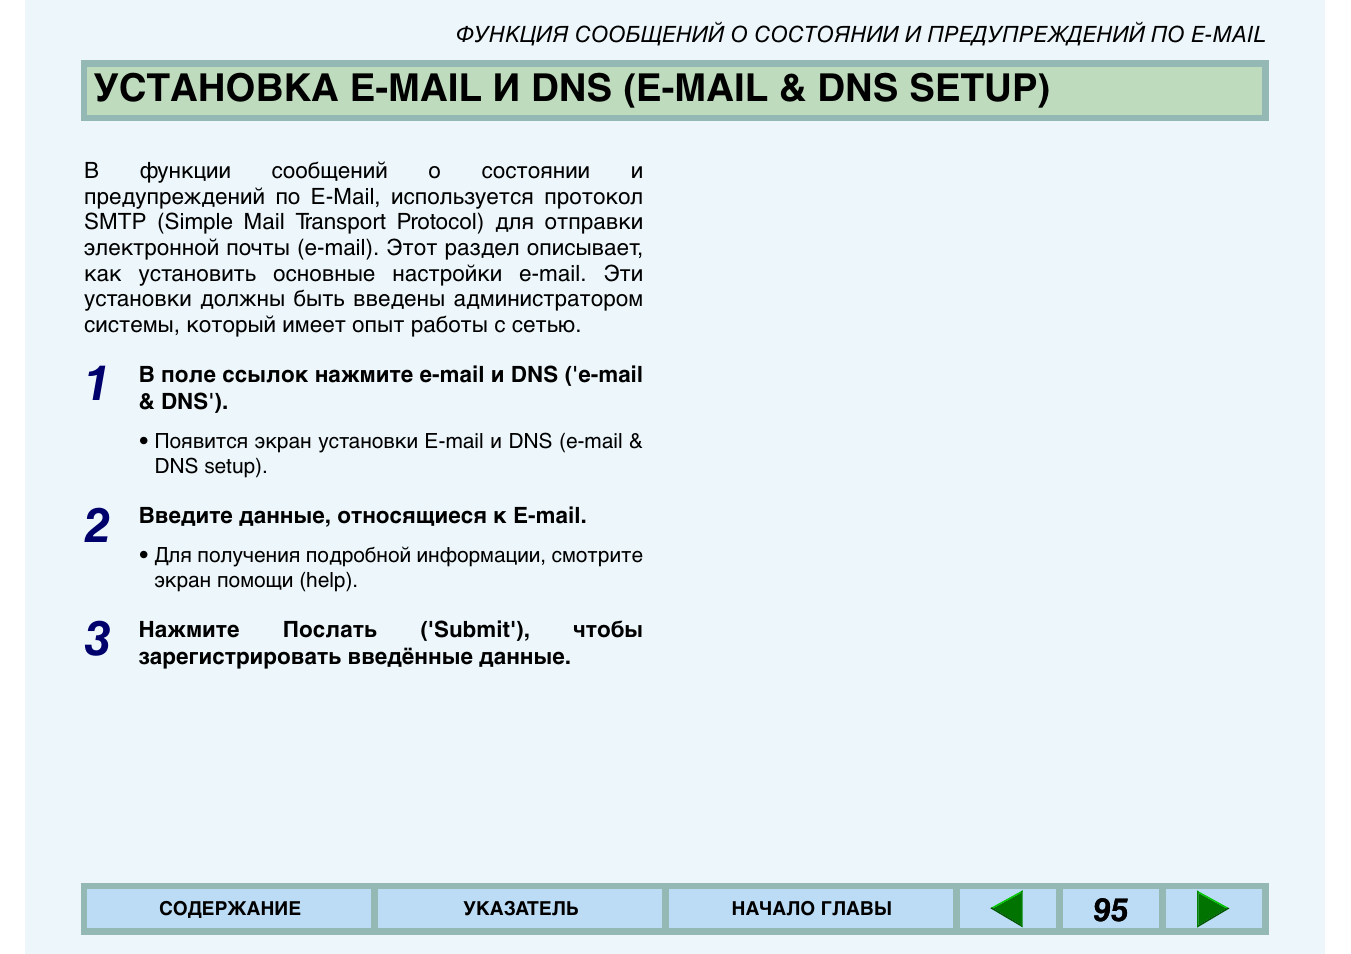 Установка e-mail и dns (e-mail & dns setup), Установка e-mail и dns (e-mail & dns, Setup) | E-mail & dns setup), Установка e-mail и dns | Инструкция по эксплуатации Sharp AR-235 | Страница 94 / 98